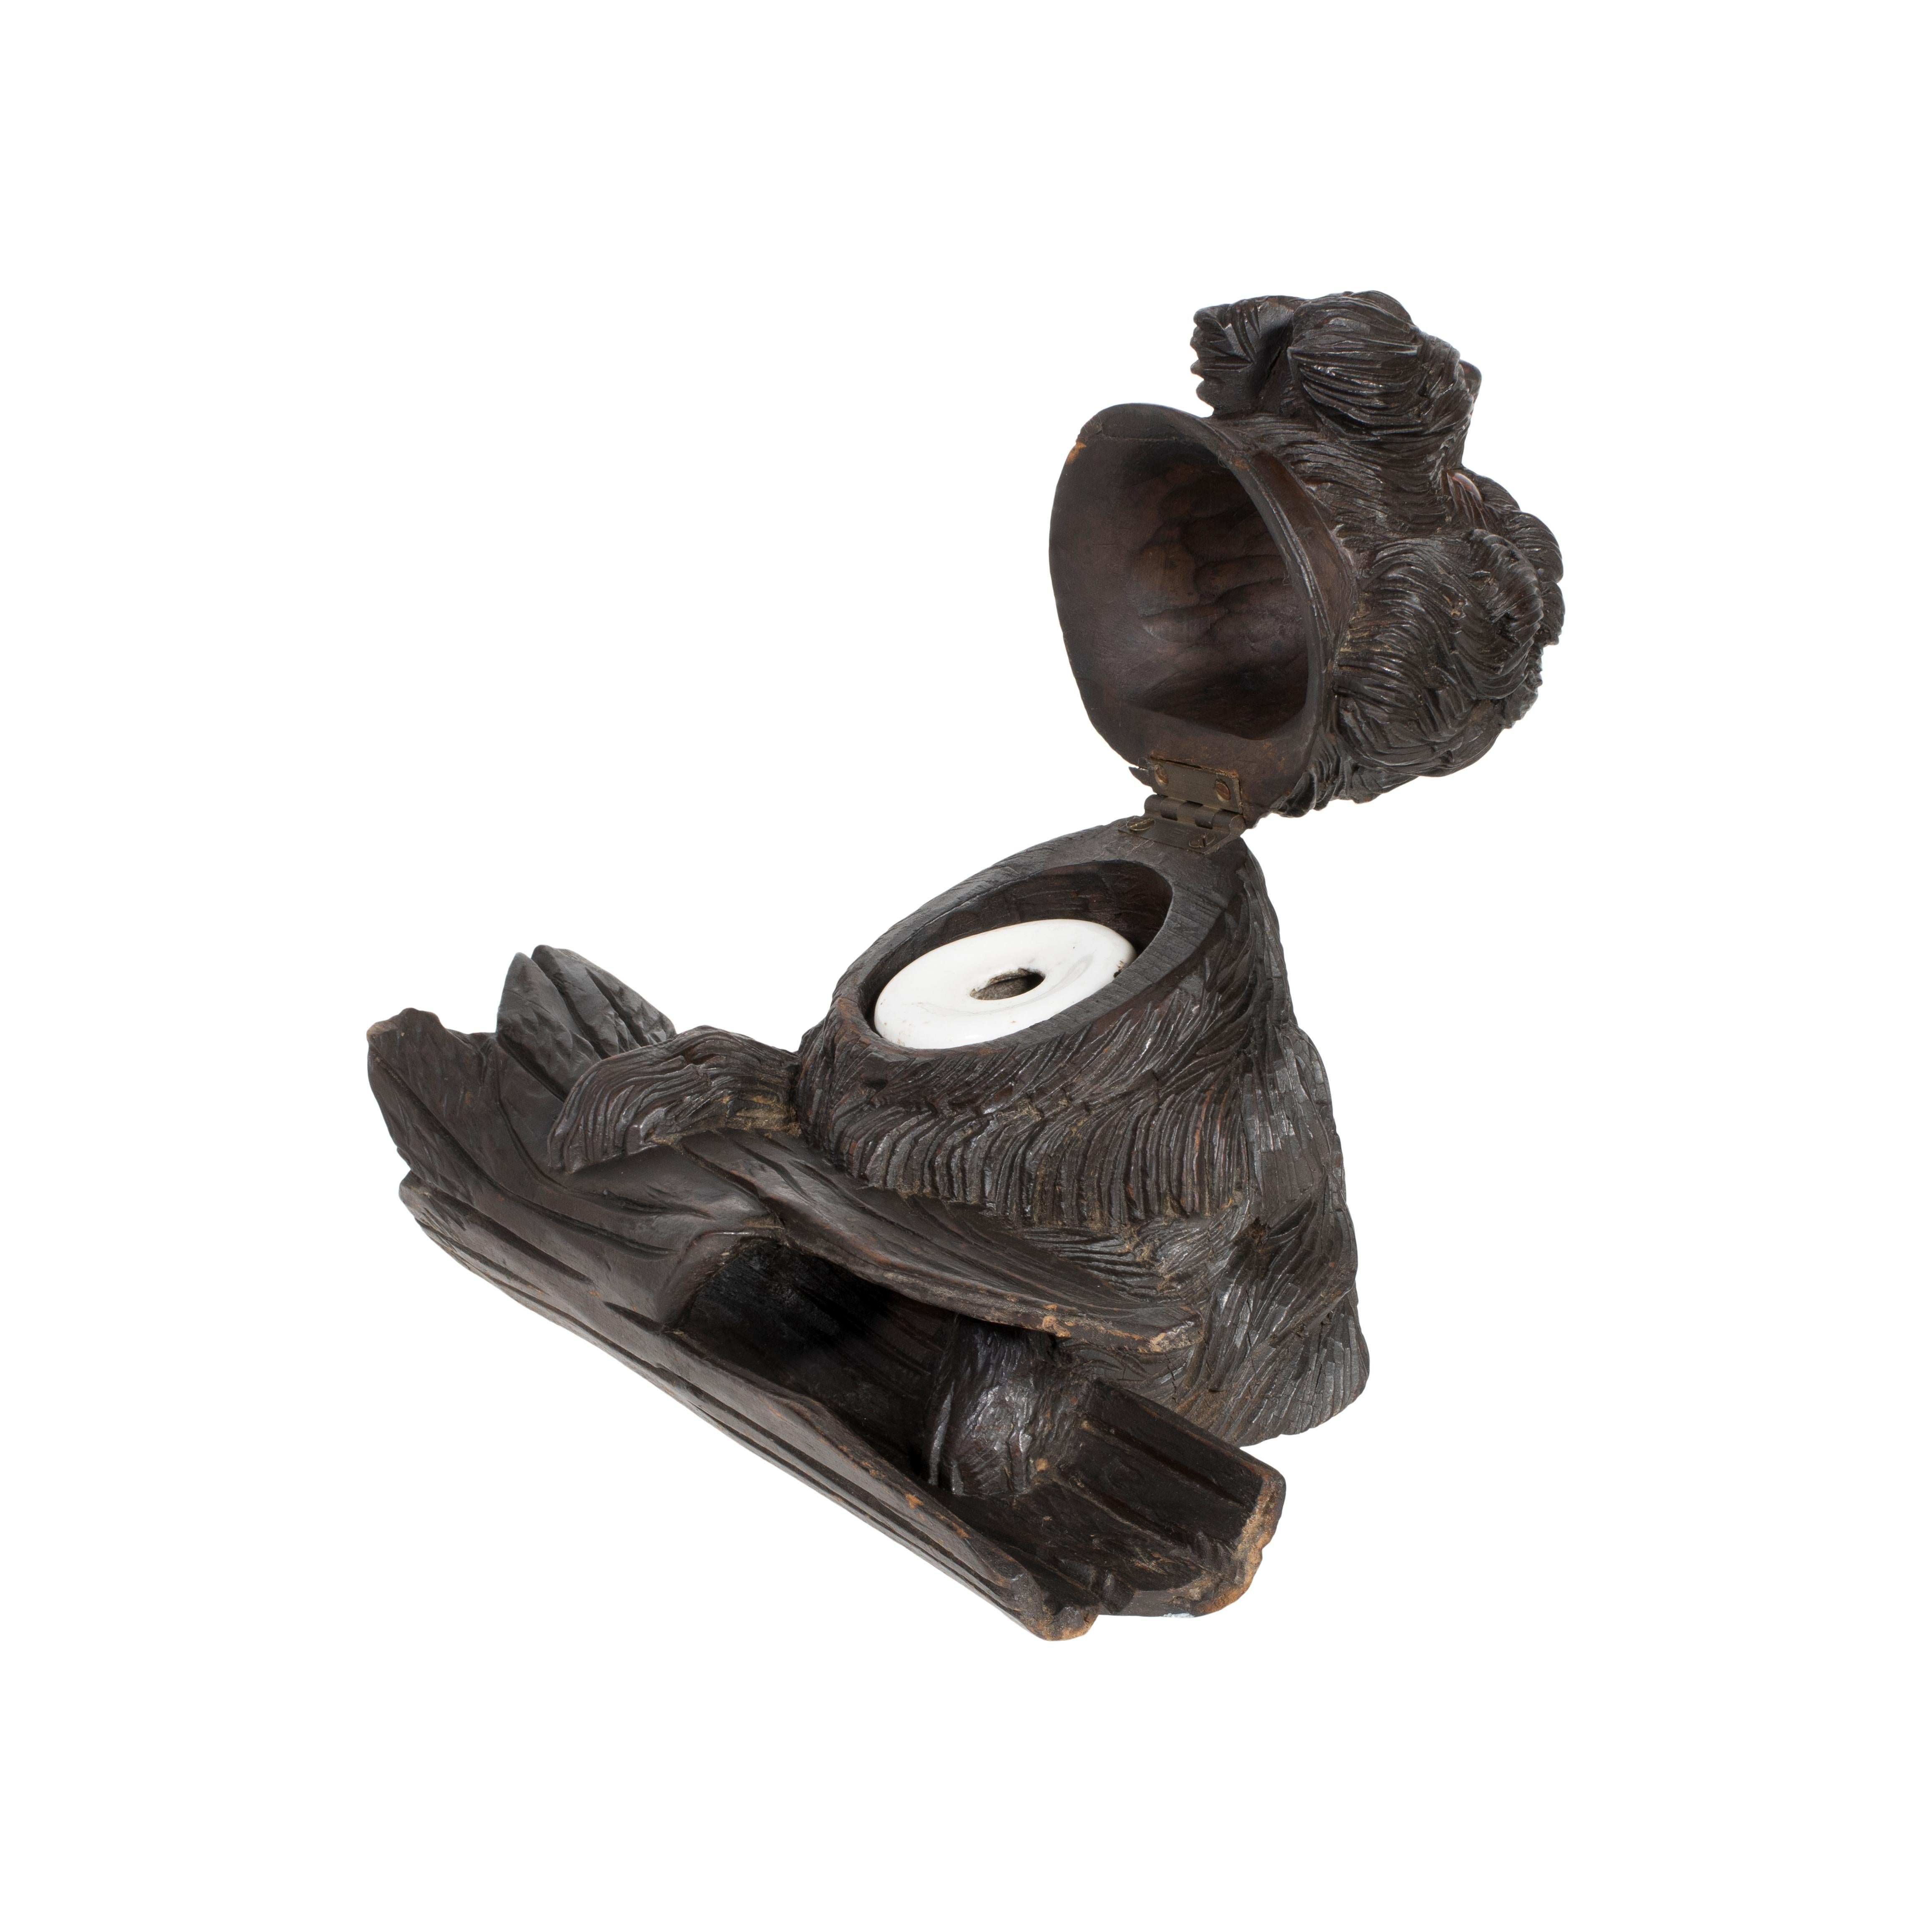 Encrier en forme de chien hirsute de la forêt noire, sculpté en Suisse, avec porte-plume. C'est dans la ville de Townes qu'est née, dans les années 1800, l'industrie suisse de la sculpture sur bois. À la fin des années 1800, il était devenu la force